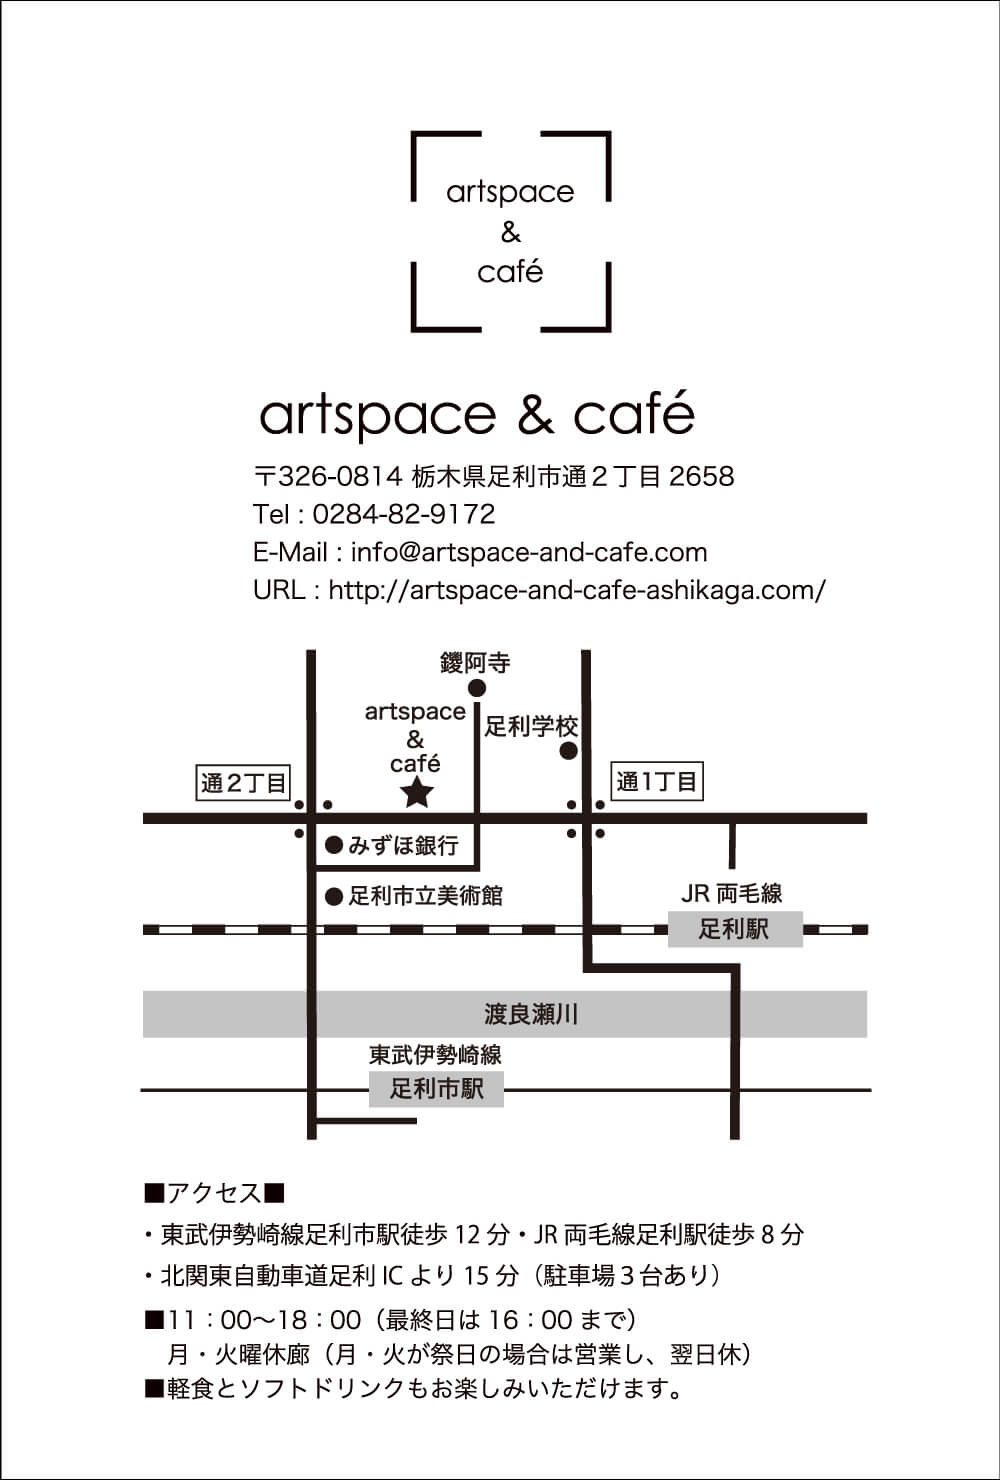 栃木県足利市artspace&cafe(アートスペース&カフェ)2022年4月13日〜24日堀昌子個展